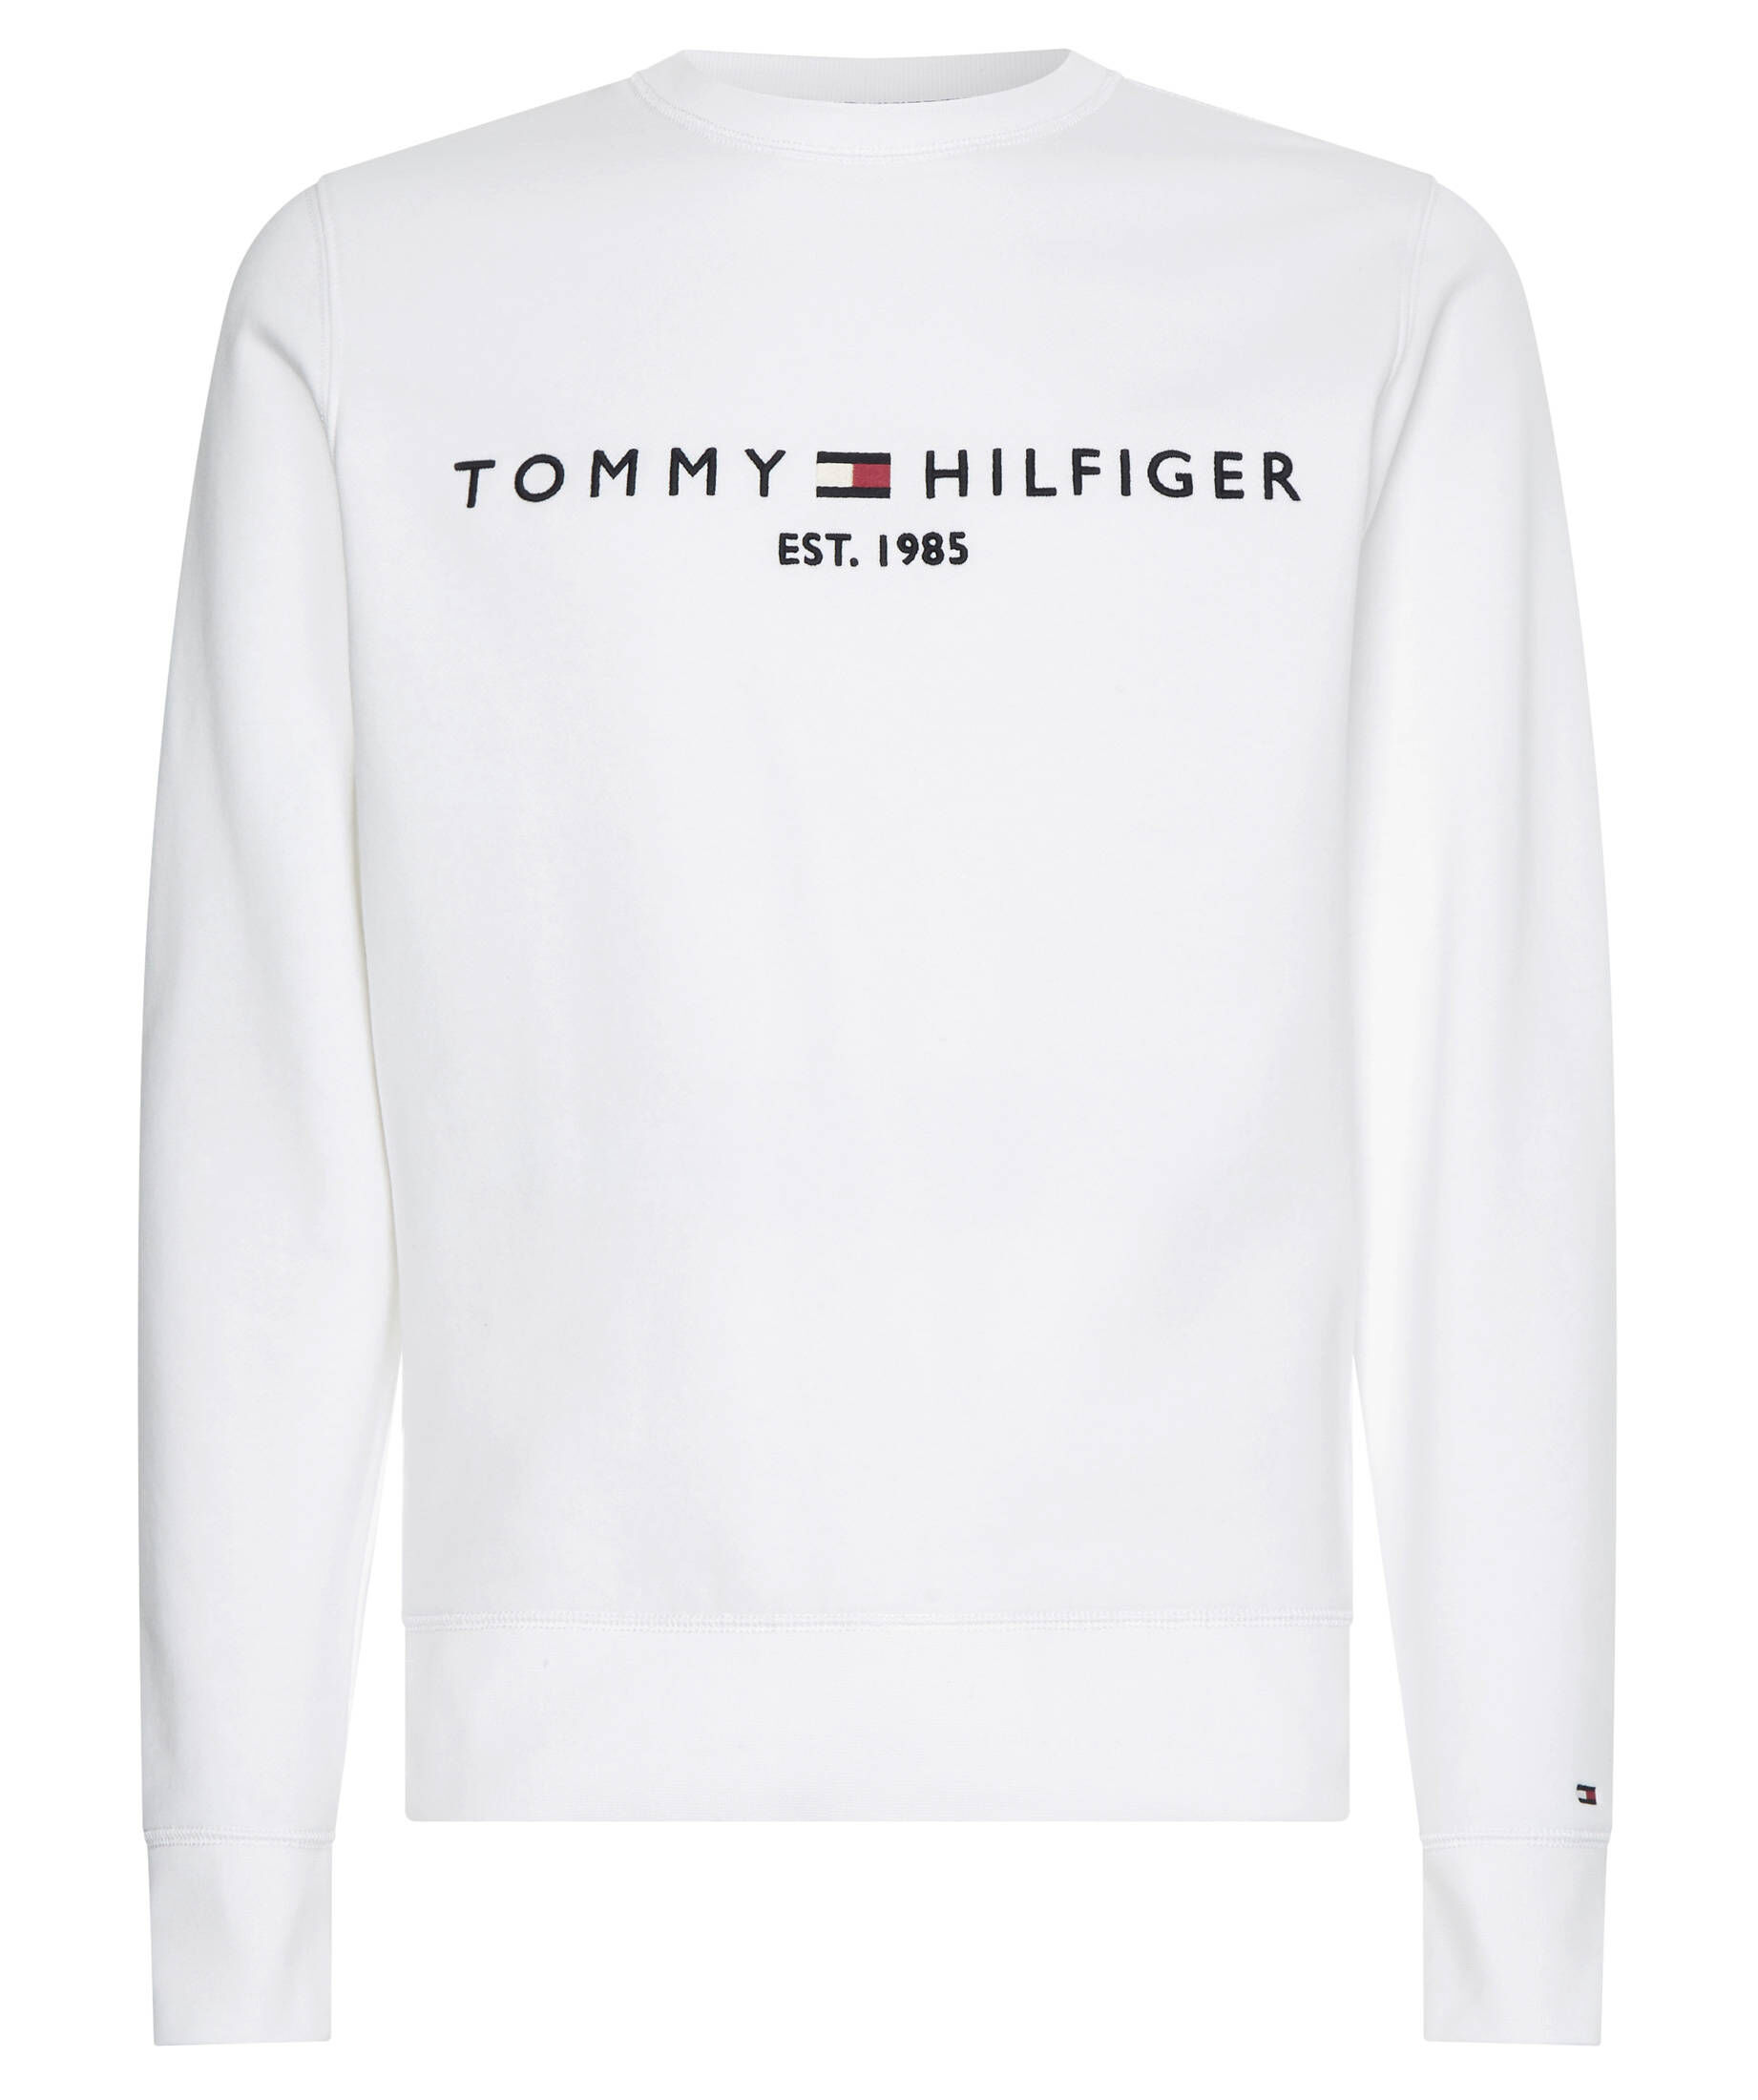 Tommy Hilfiger Herren Pullover Sweatshirt S M L XL XXL 